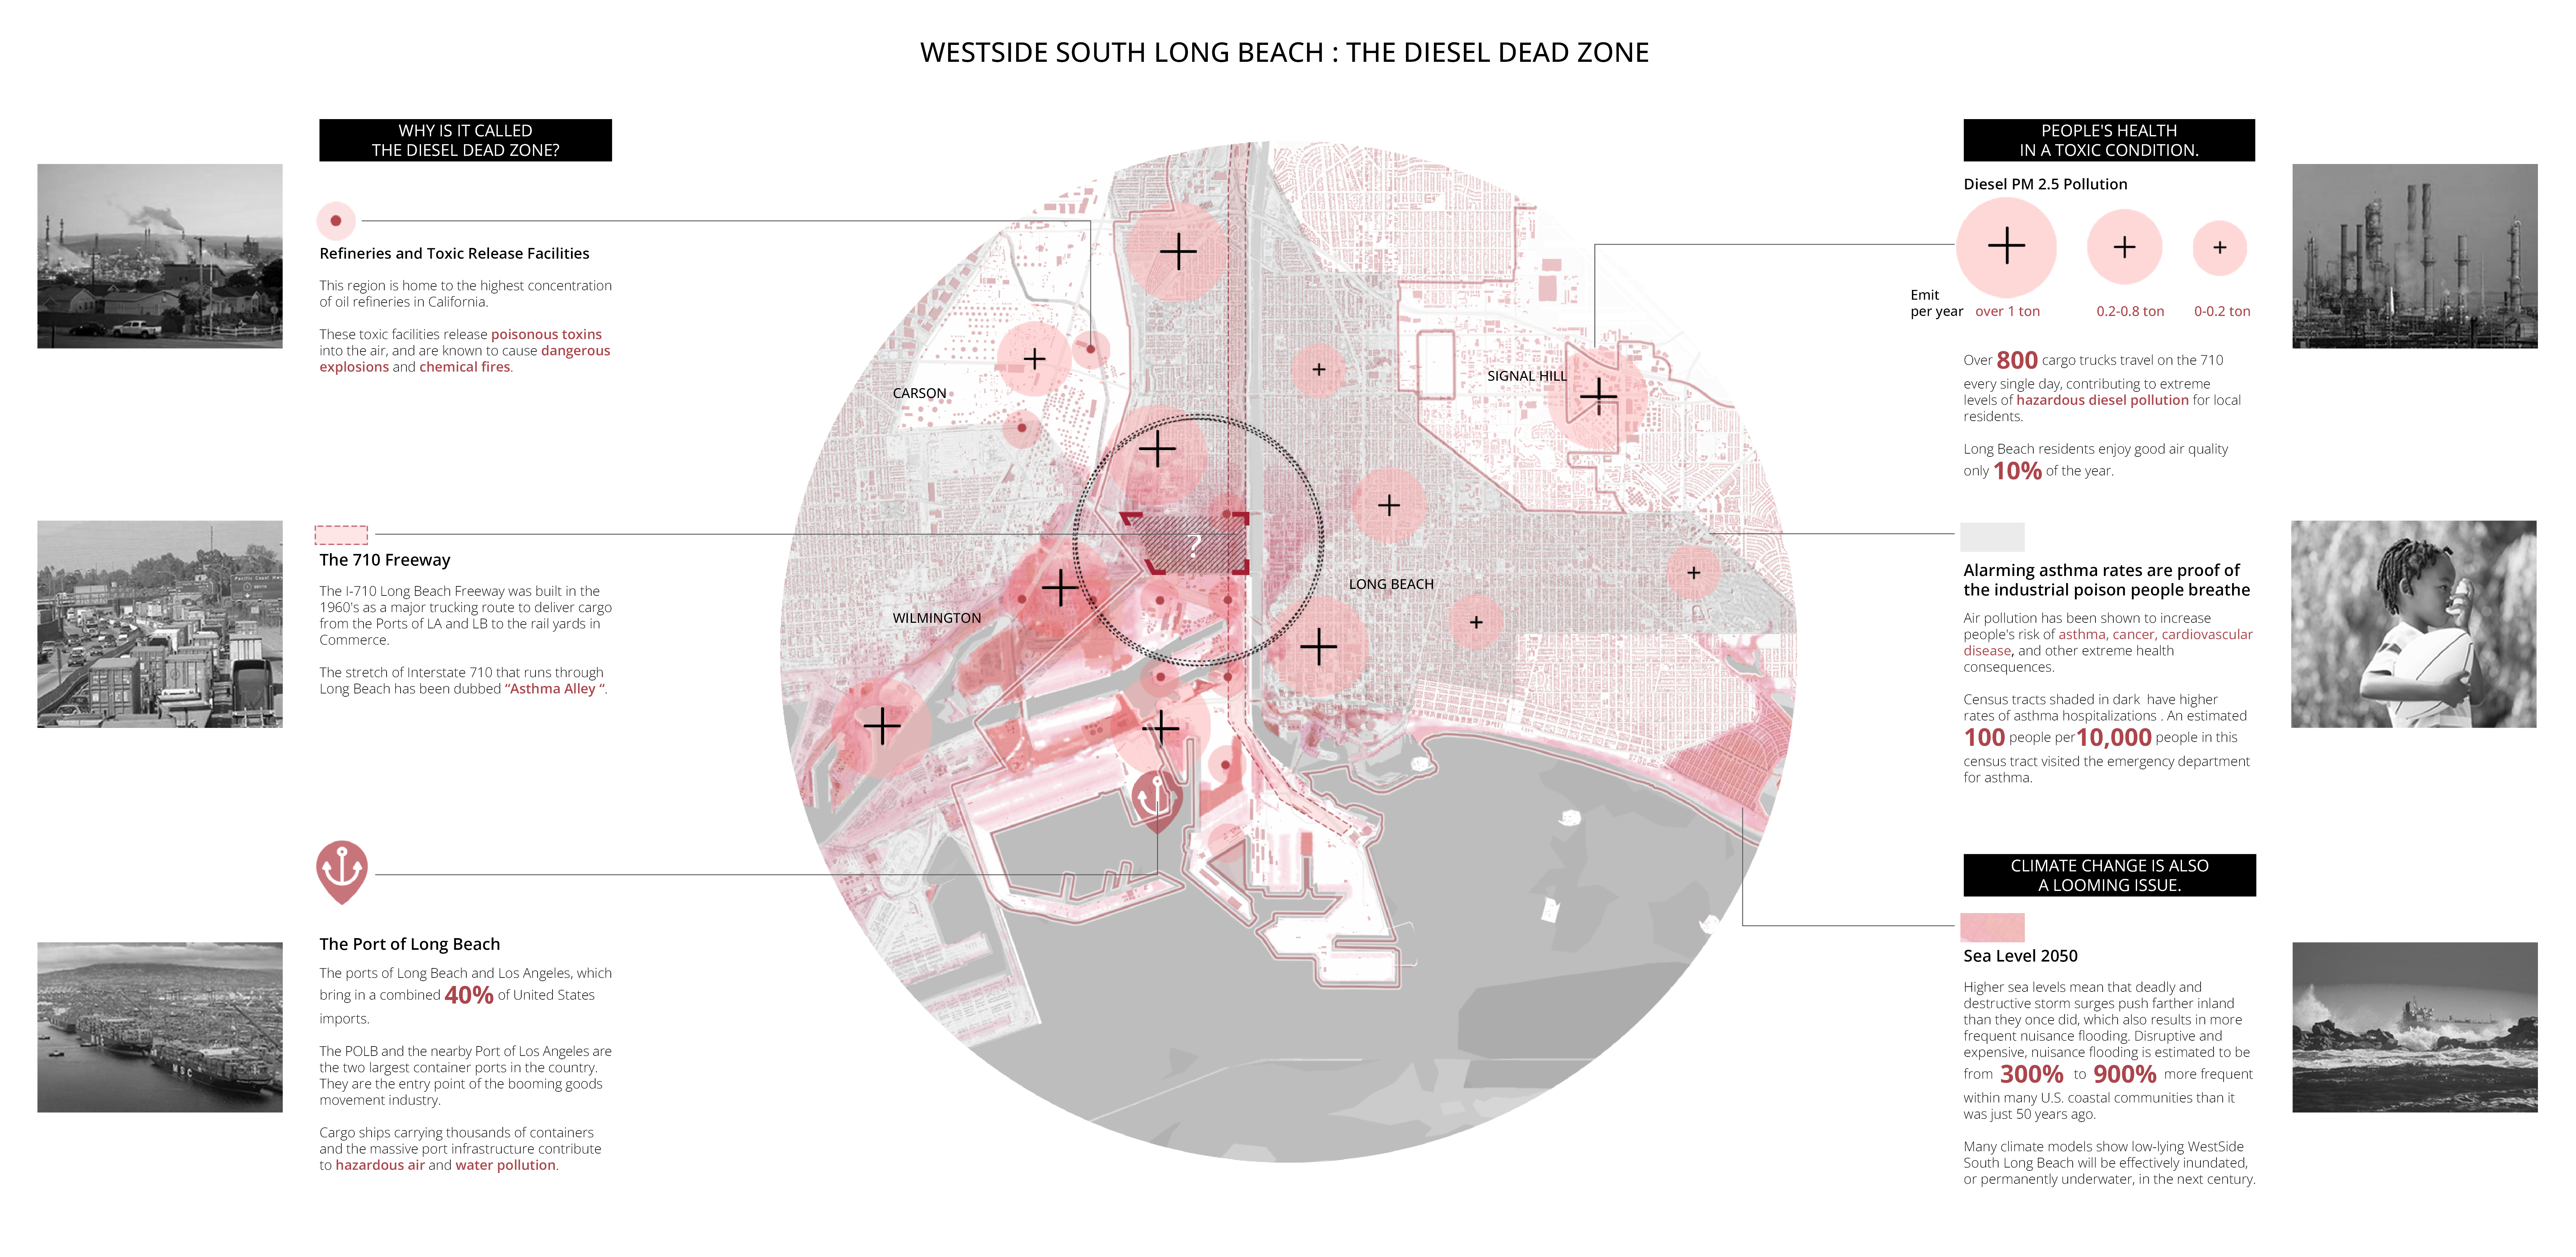 Westside South Long Beach : The Diesel Dead Zone